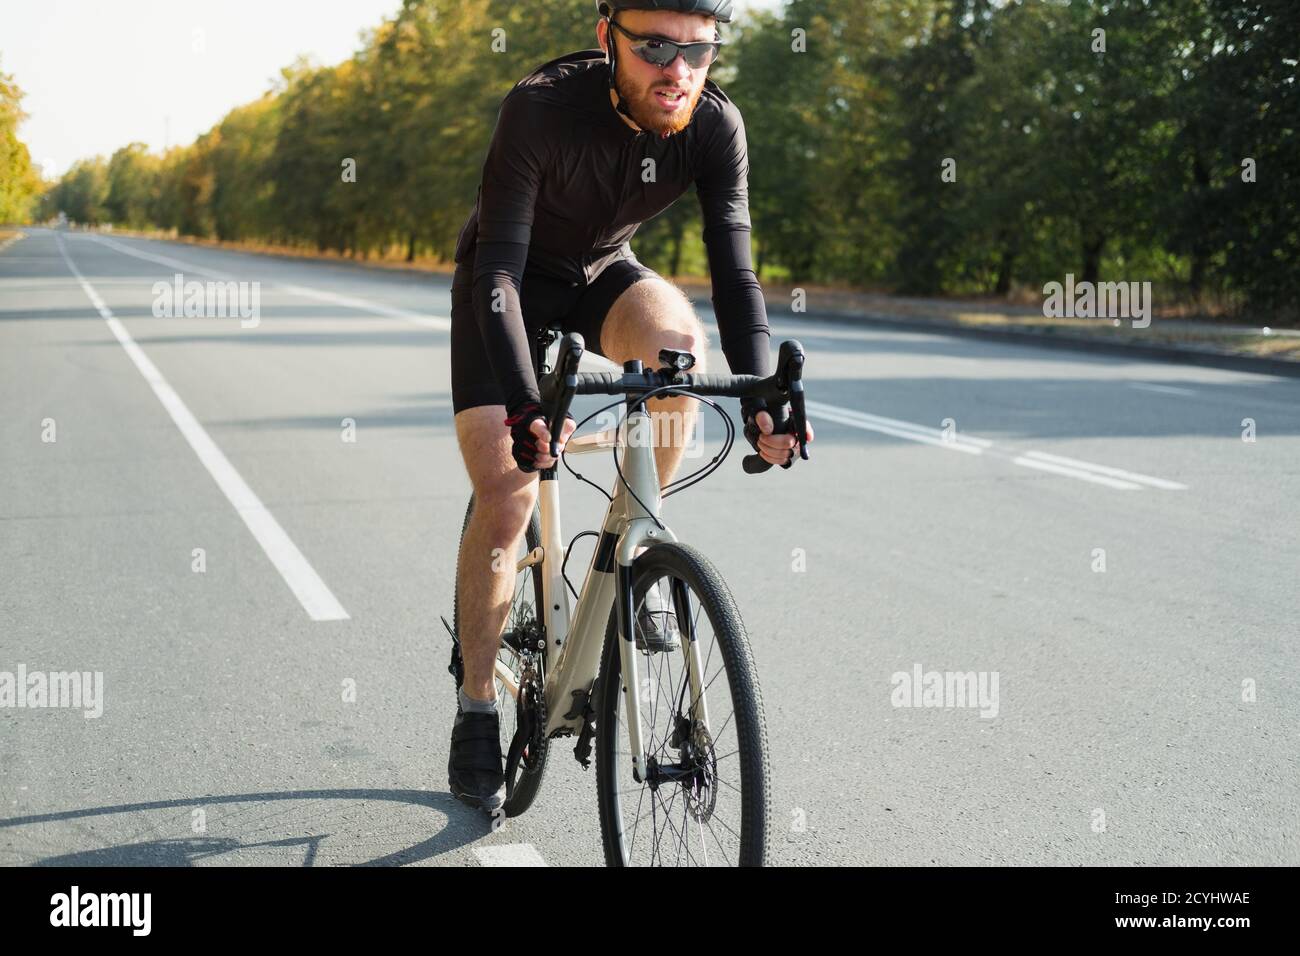 Immagine ravvicinata di un ciclista stradale su una ghiaia. Allenamento in bicicletta all'aperto, bicicletta e sportivo dall'aspetto moderno, stile di vita attivo Foto Stock